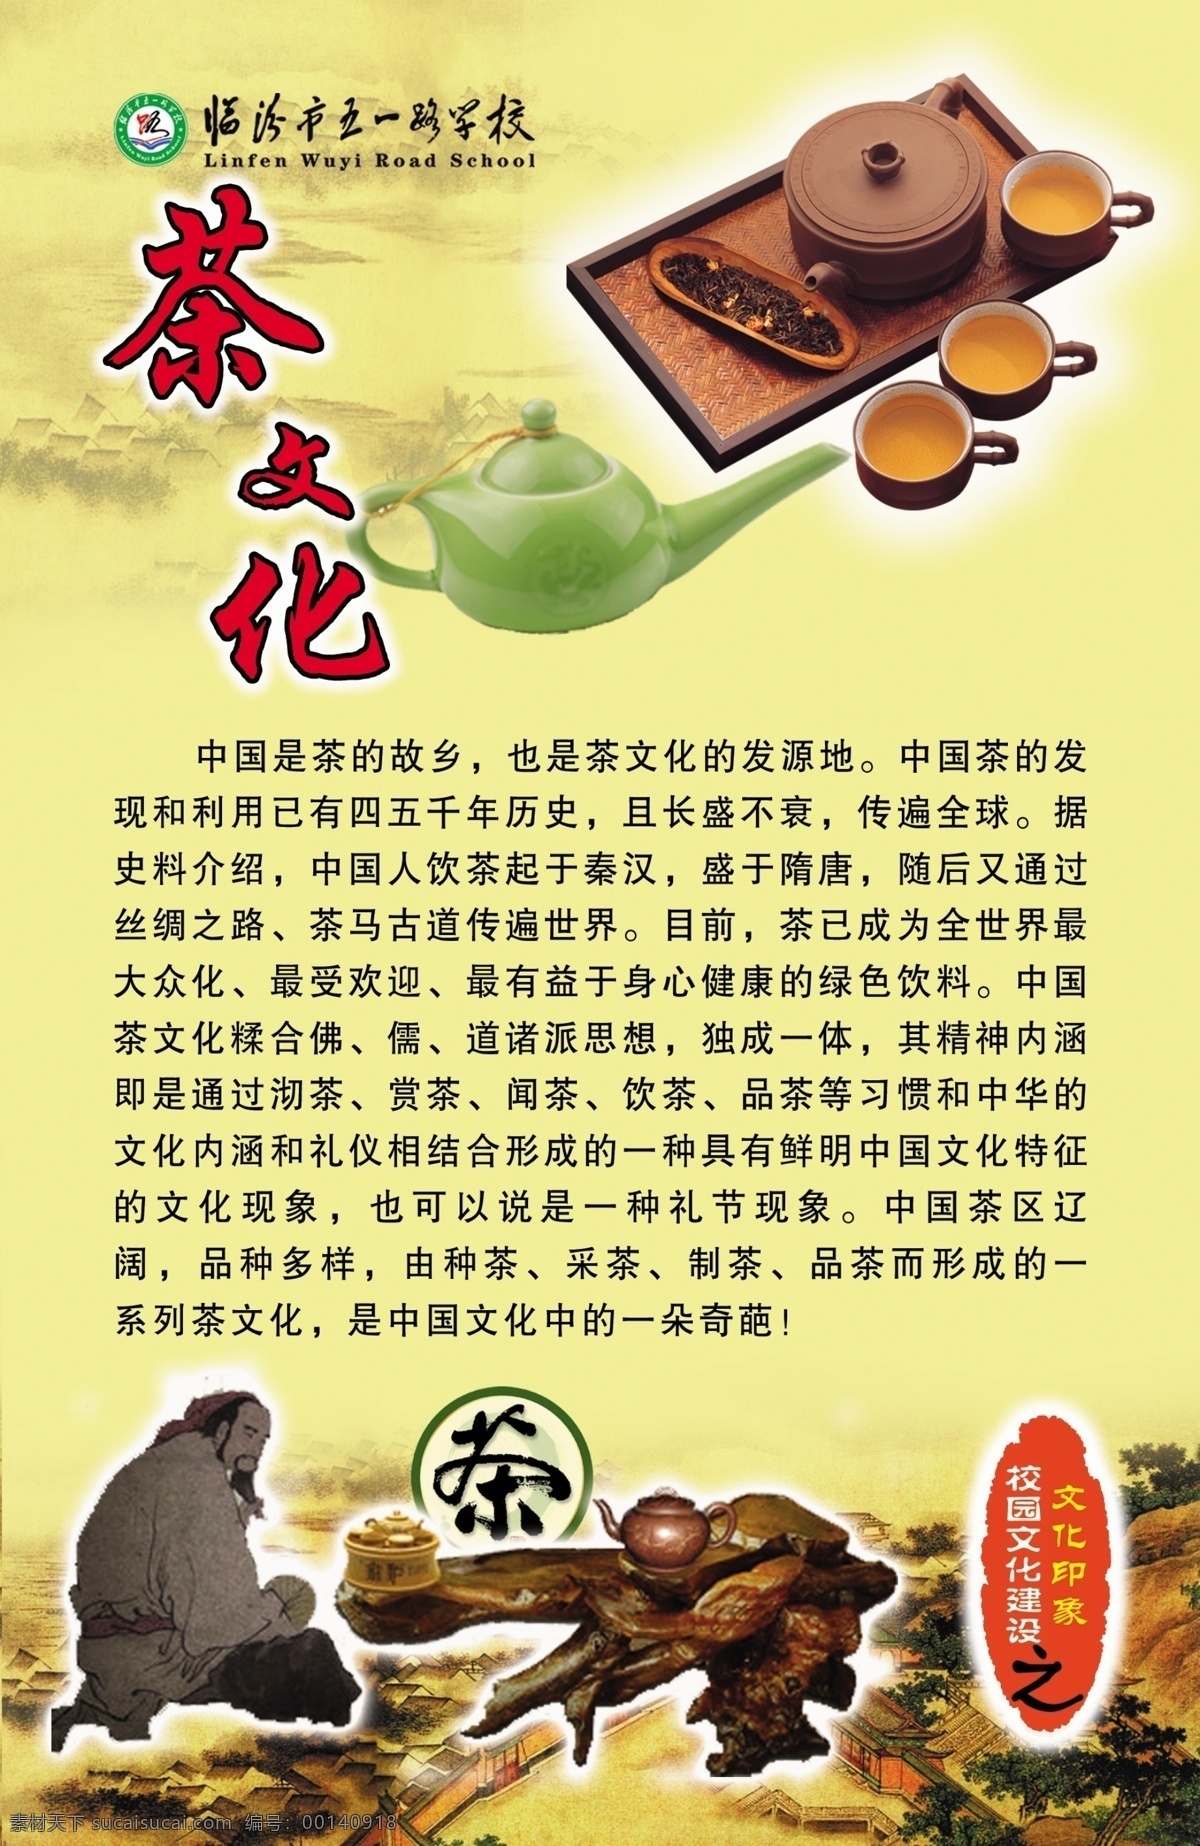 茶文化 模板下载 茶文化棋简介 文化印象 展板 校园文化 展板模板 茶文化历史 广告设计模板 源文件